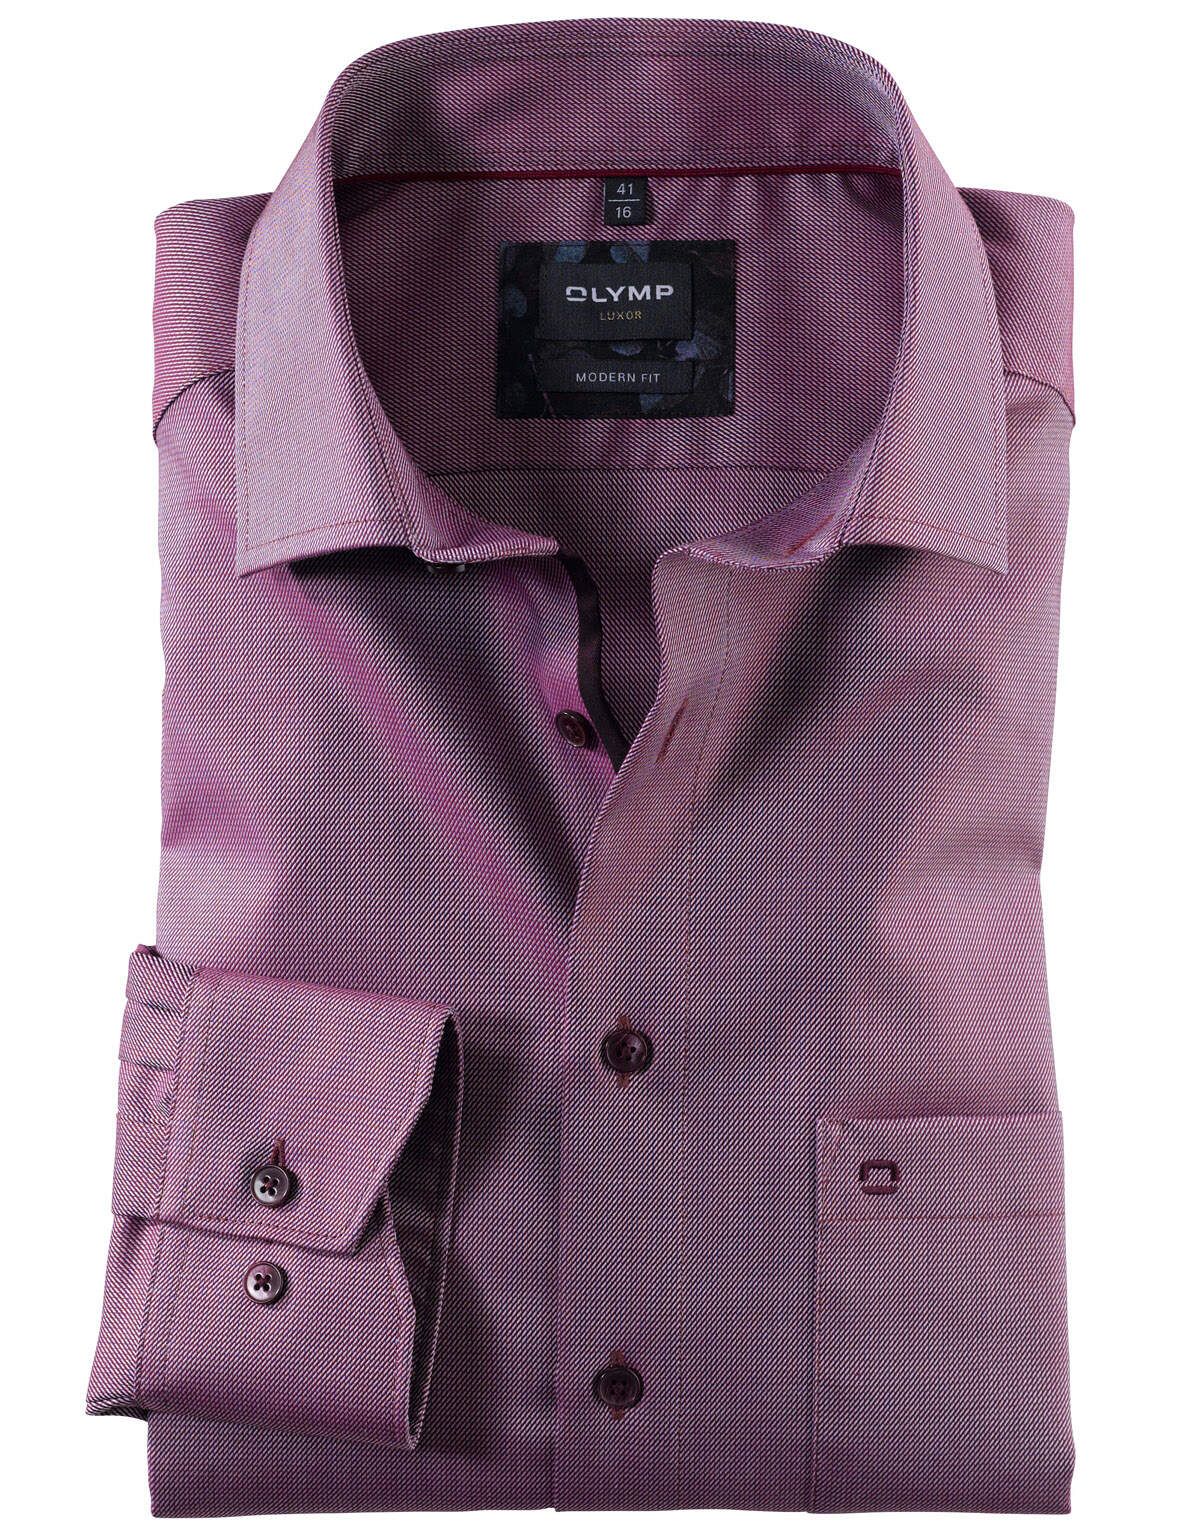 Рубашка мужская розовая OLYMP Luxor, modern fit[ФУКСИЯ]